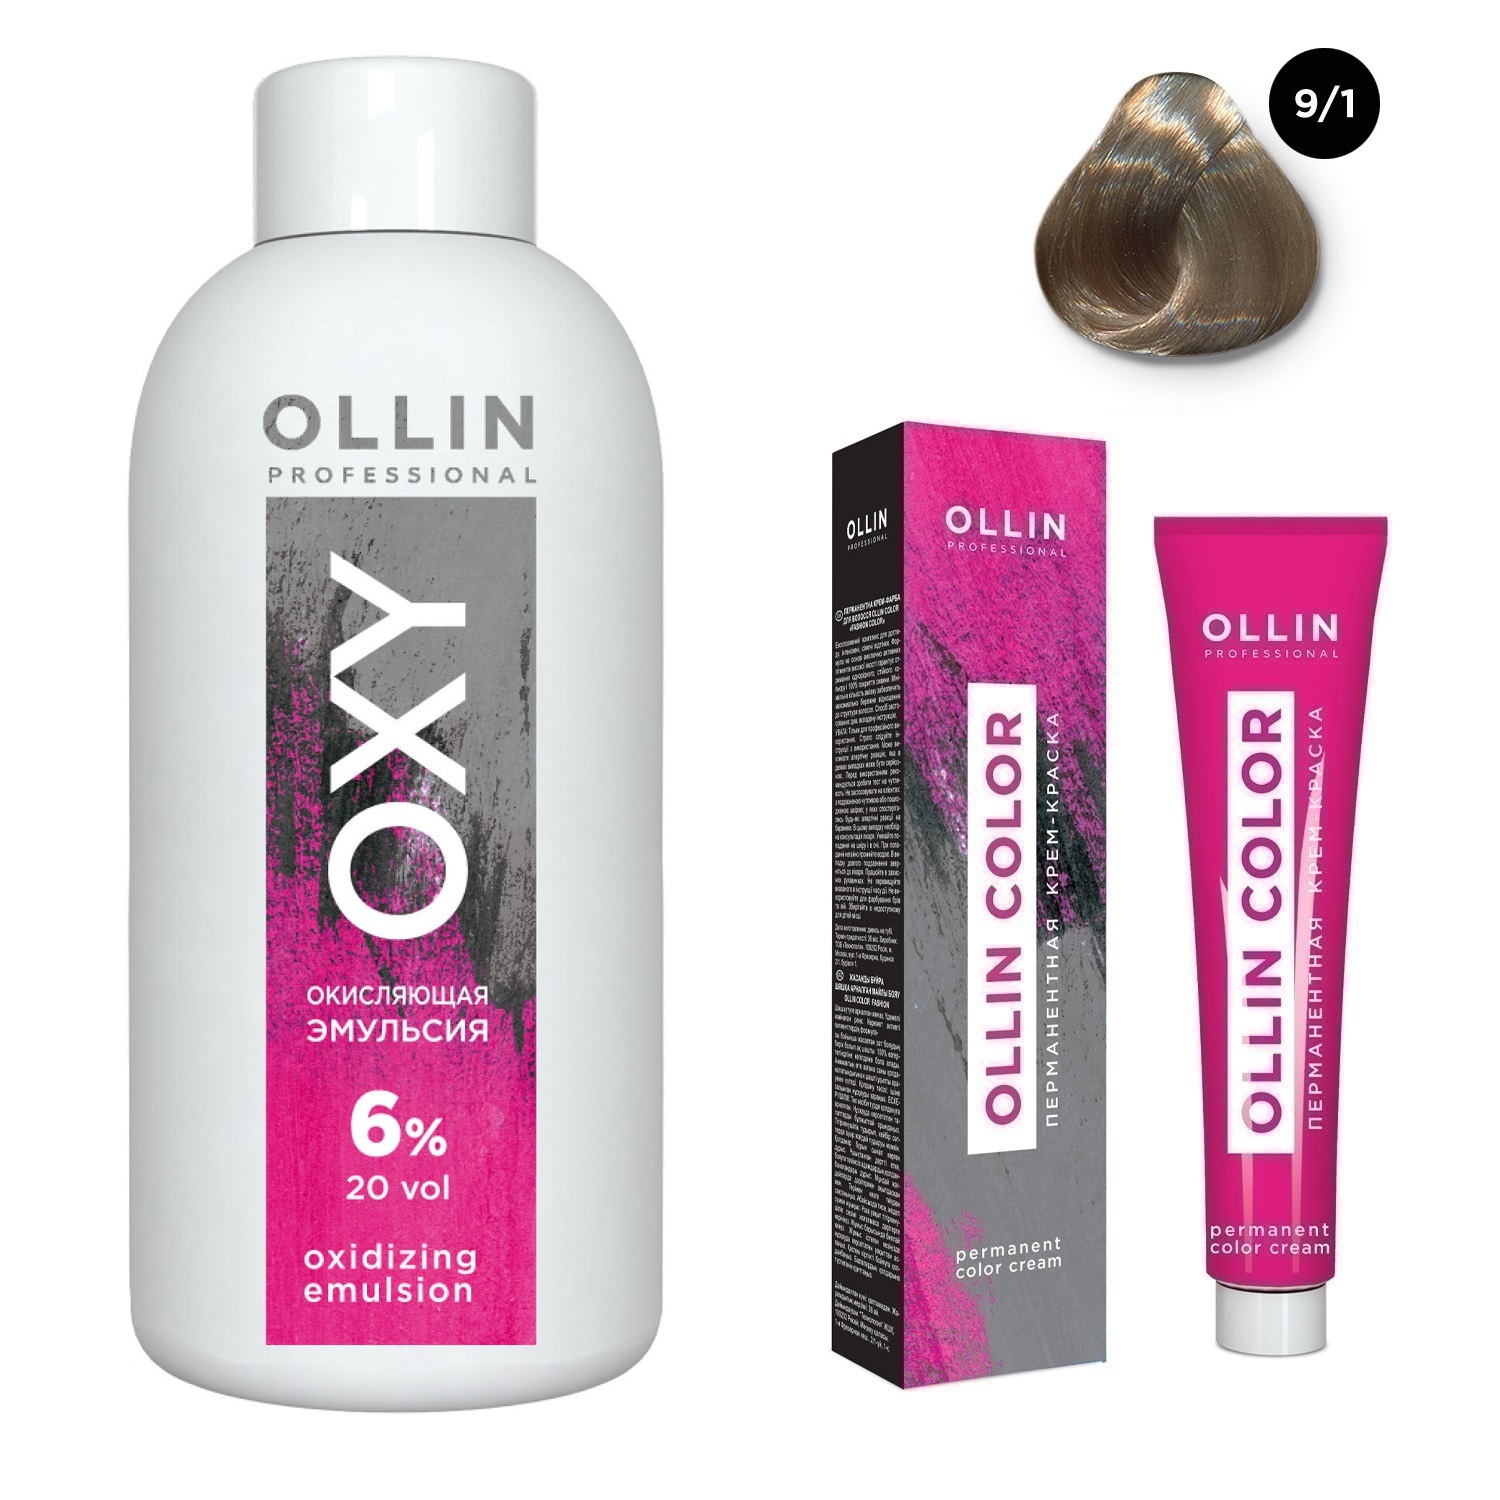 Ollin Professional Набор Перманентная крем-краска для волос Ollin Color оттенок 9/1 блондин пепельный 100 мл + Окисляющая эмульсия Oxy 6% 150 мл (Ollin Professional, Ollin Color) цена и фото